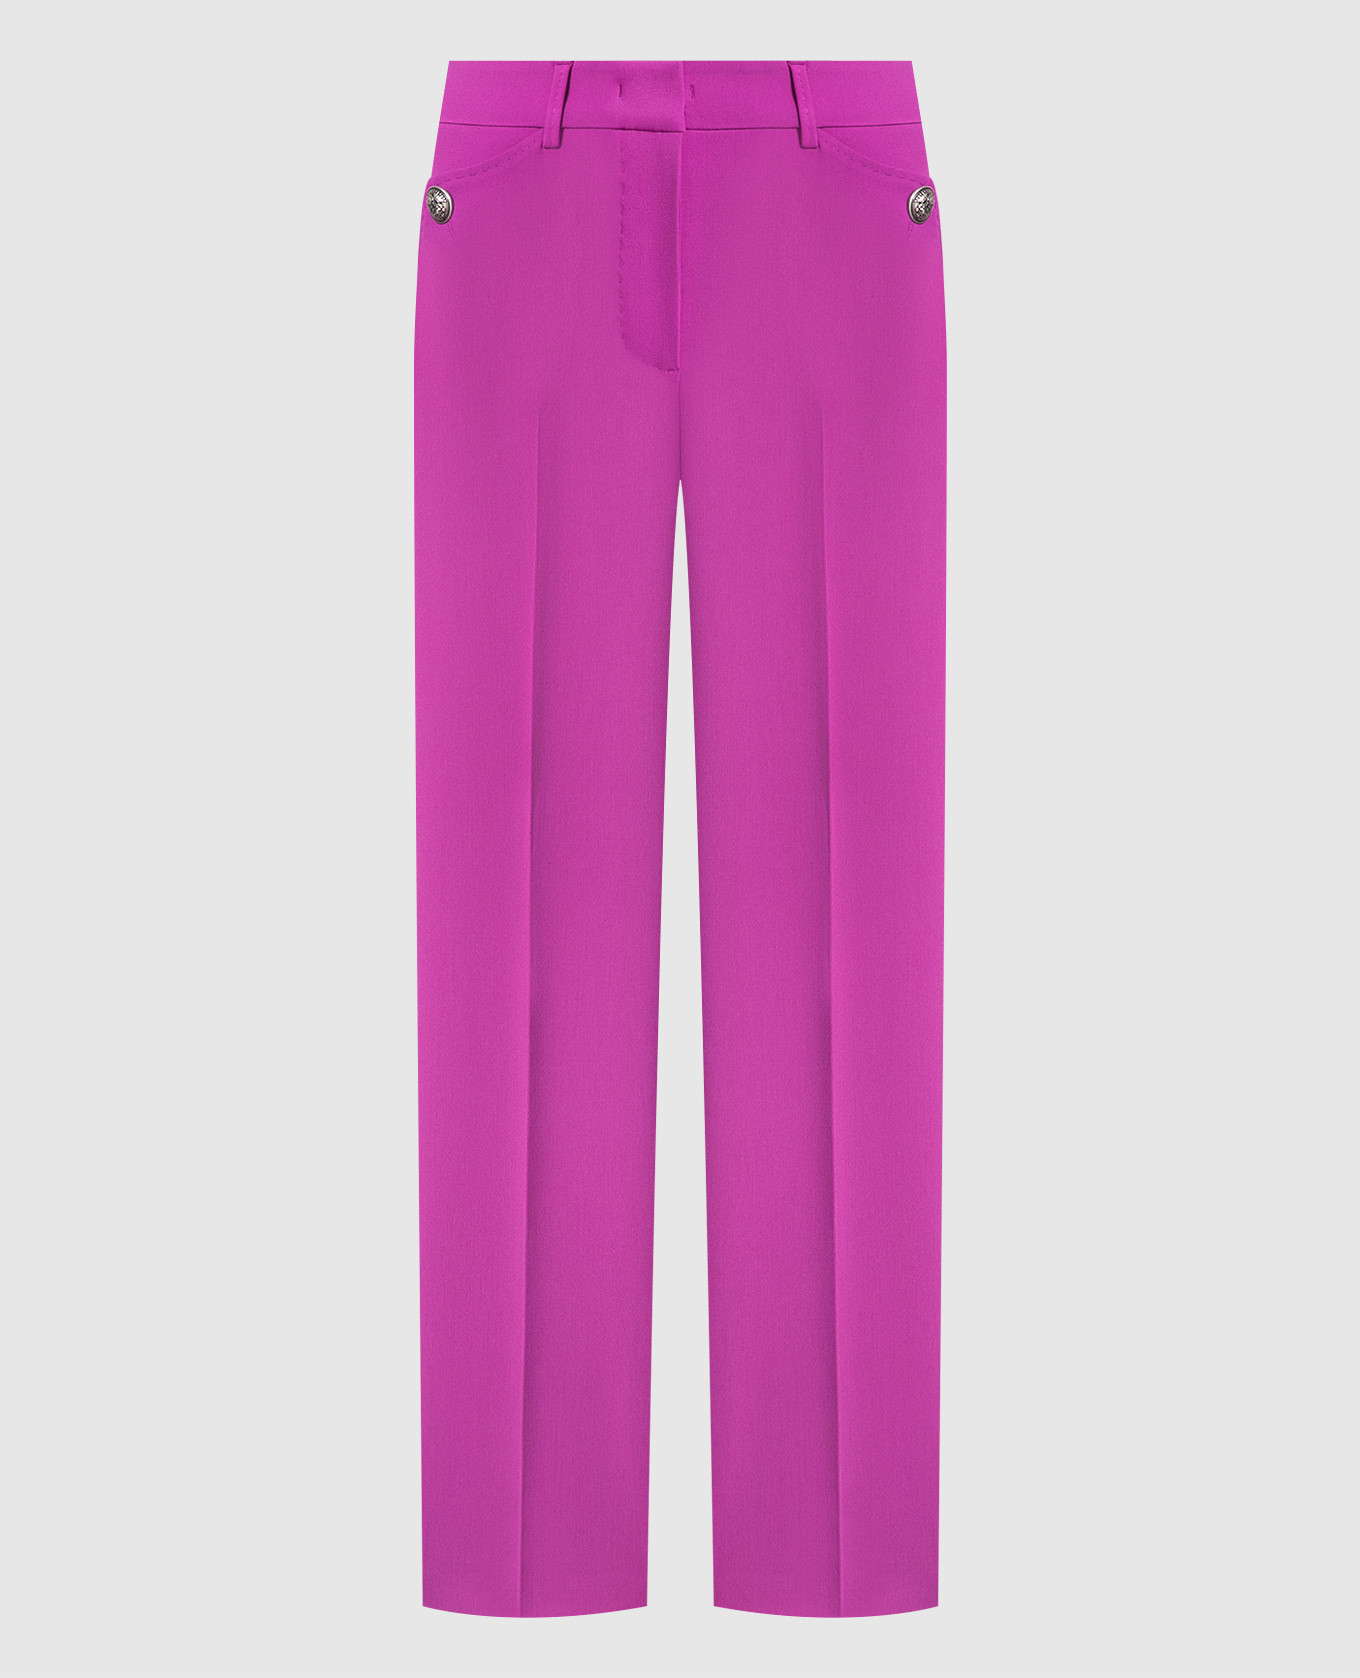 BIGA purple pants